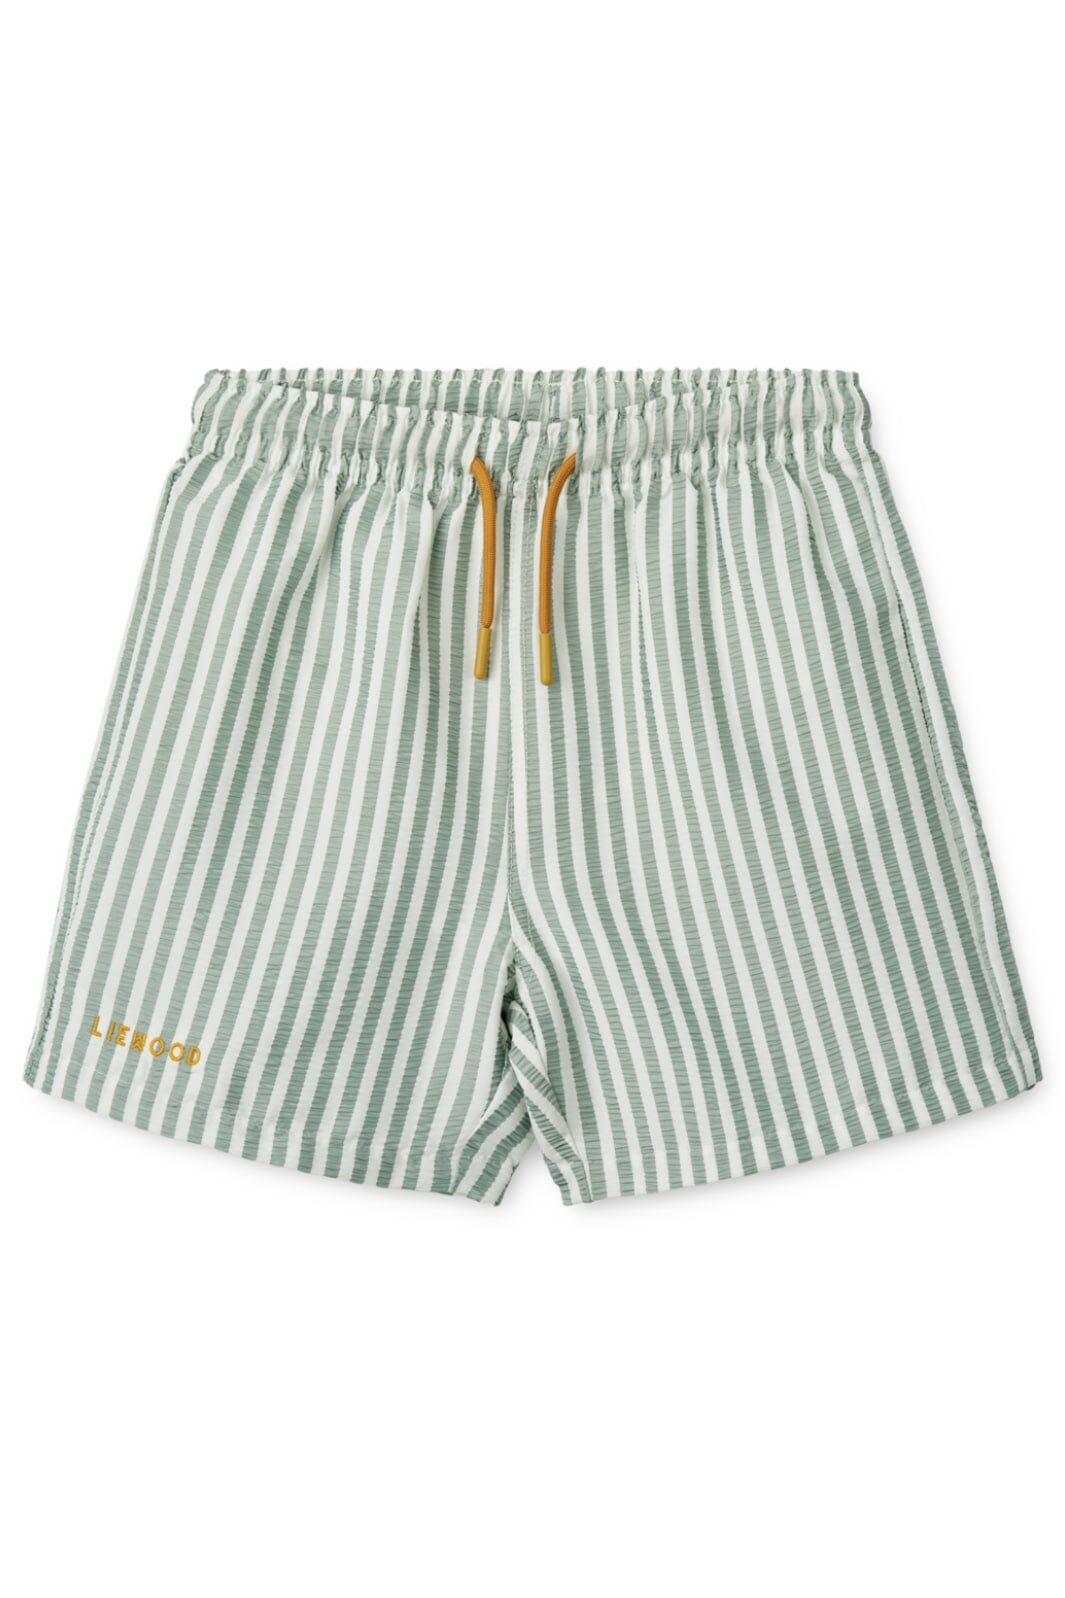 Liewood - Duke Stripe Board Shorts - Stripe Peppermint / Crisp White Badebukser 